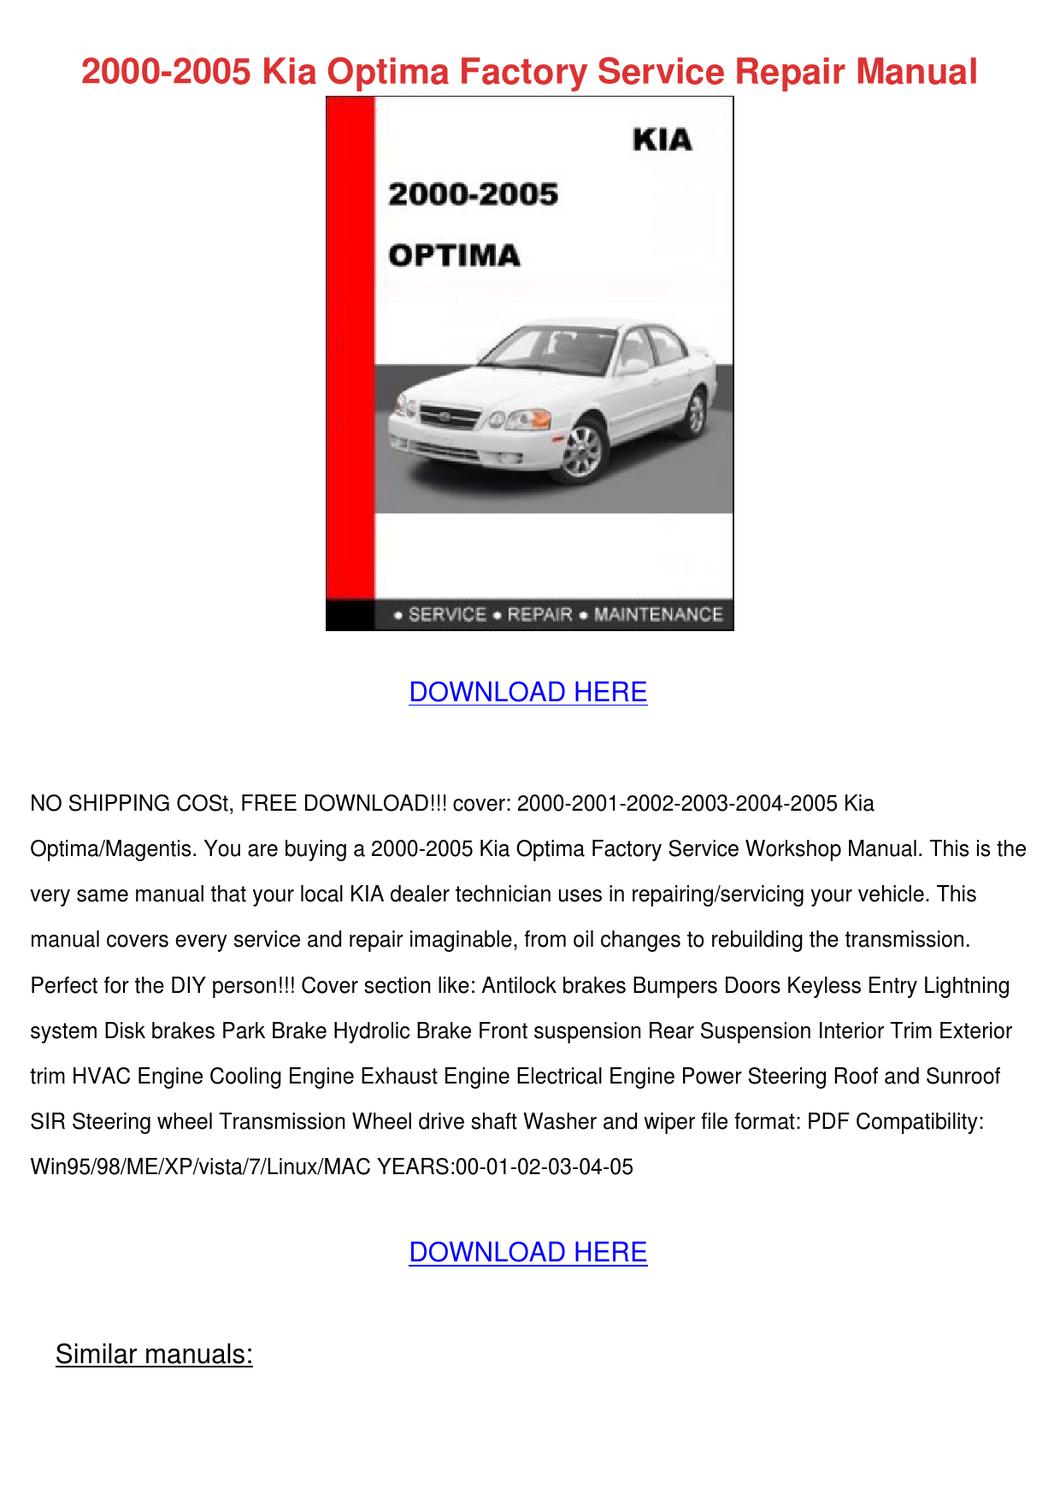 Kia optima repair manual pdf